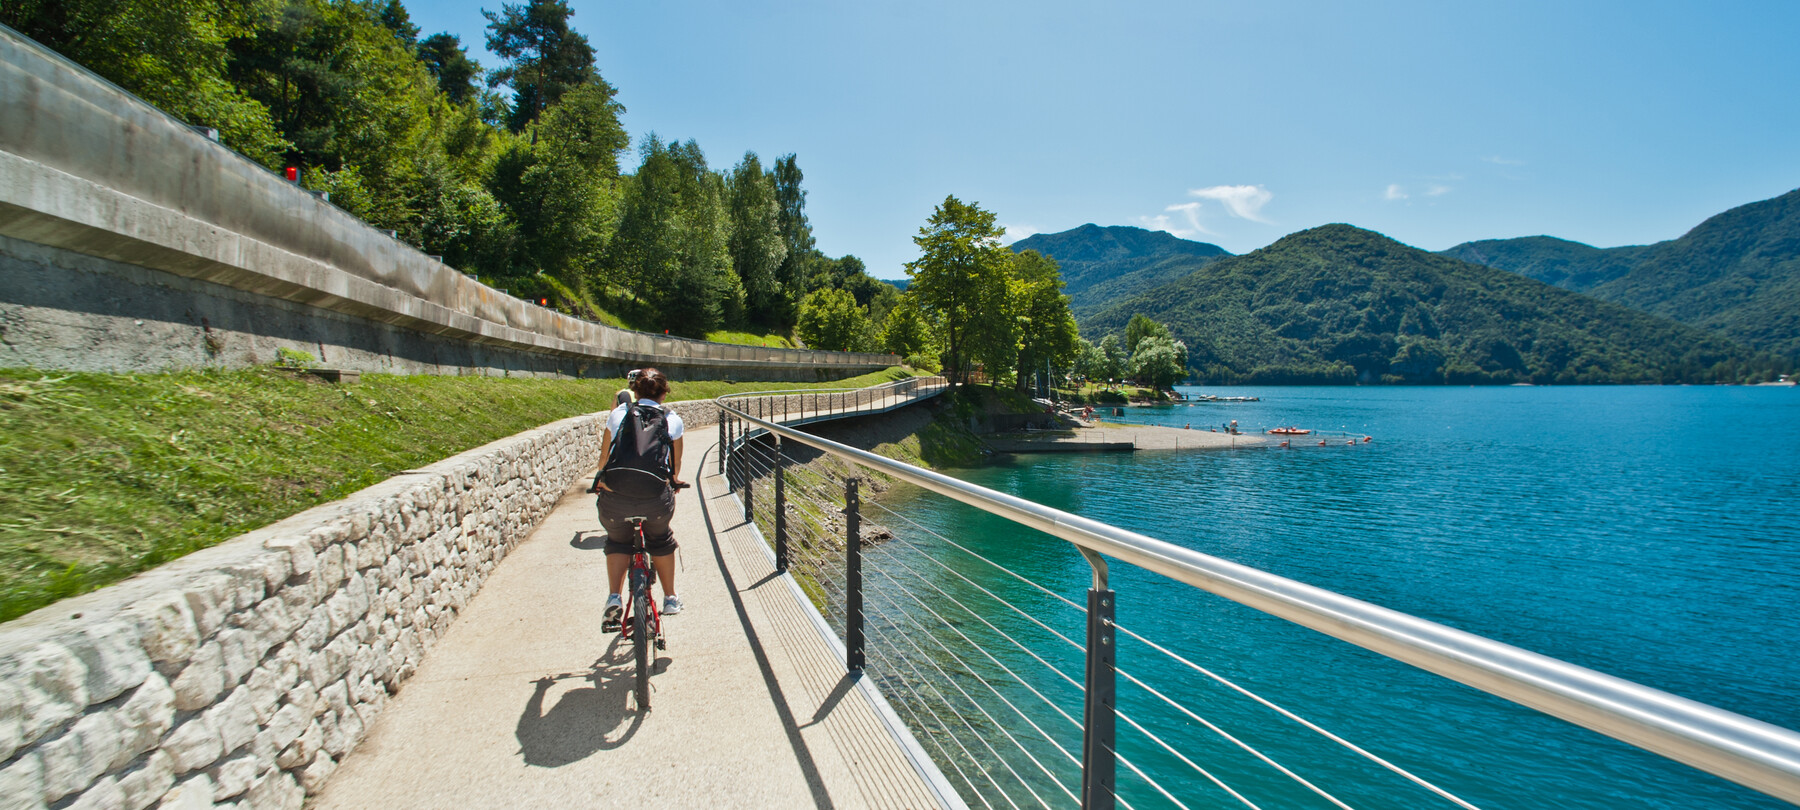 Percorsi semplici da fare in bicicletta tra i laghi del Trentino